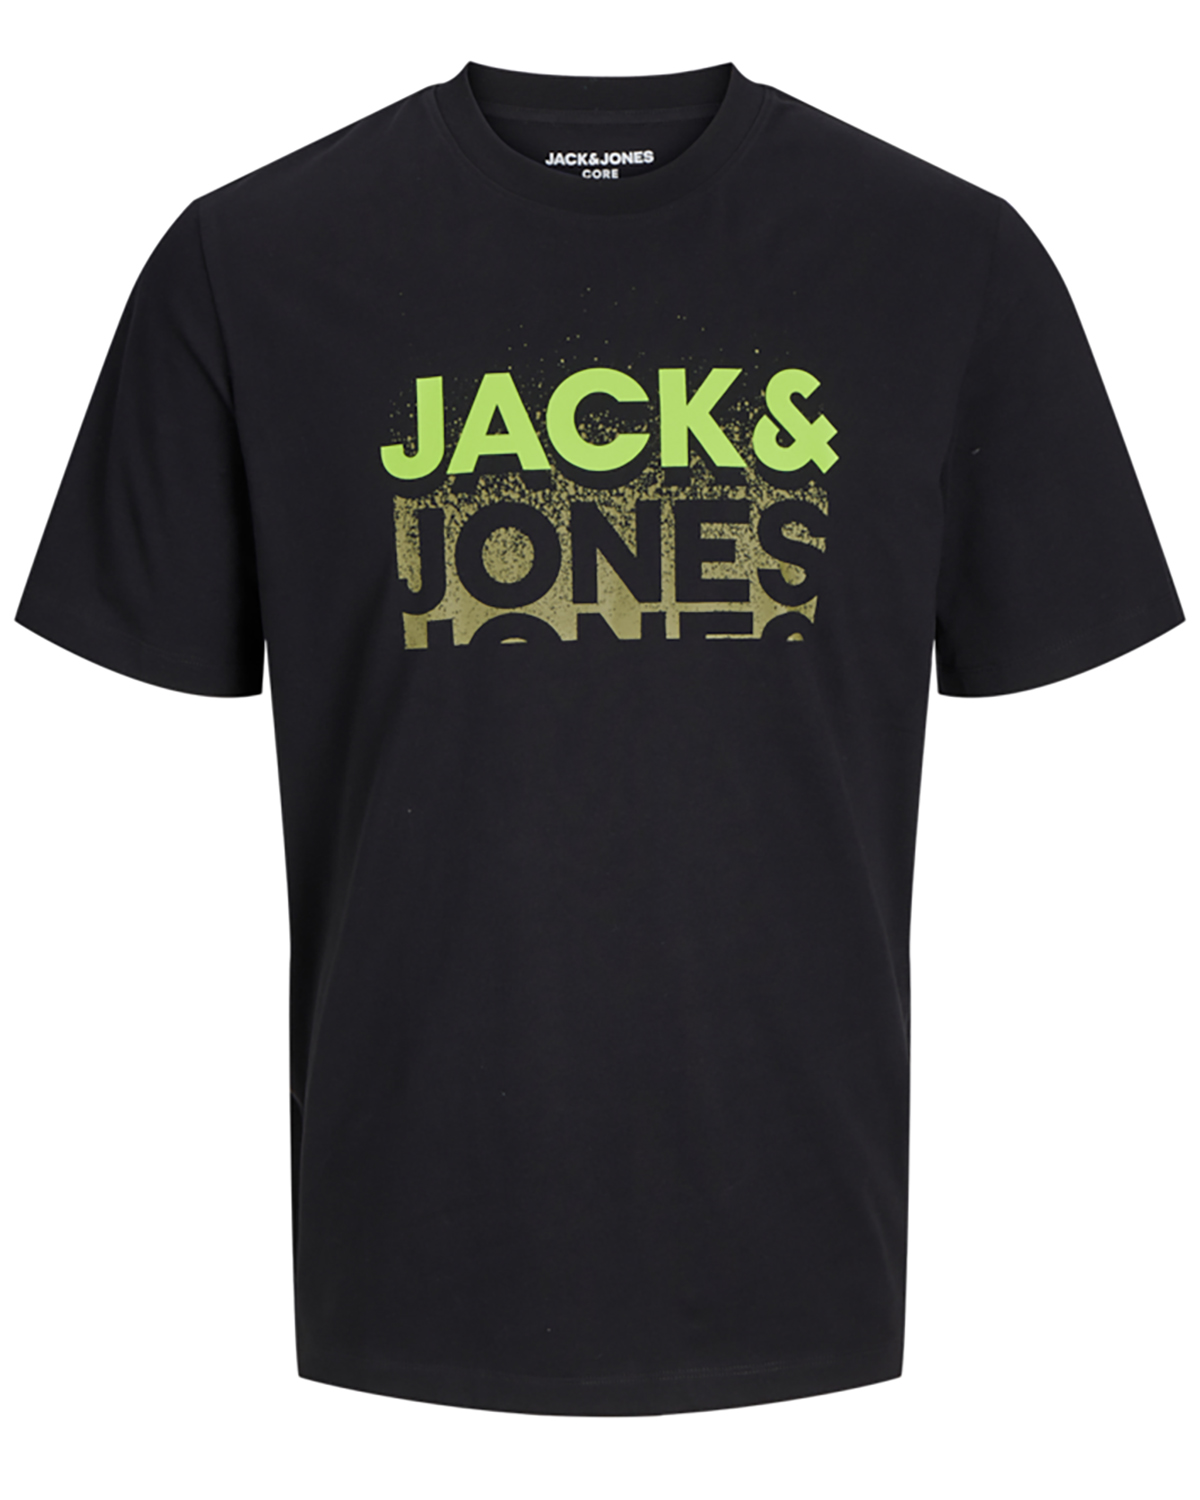 Se Jack & Jones t-shirt s/s, Gradient tee, sort - 182,M+,M hos Umame.dk